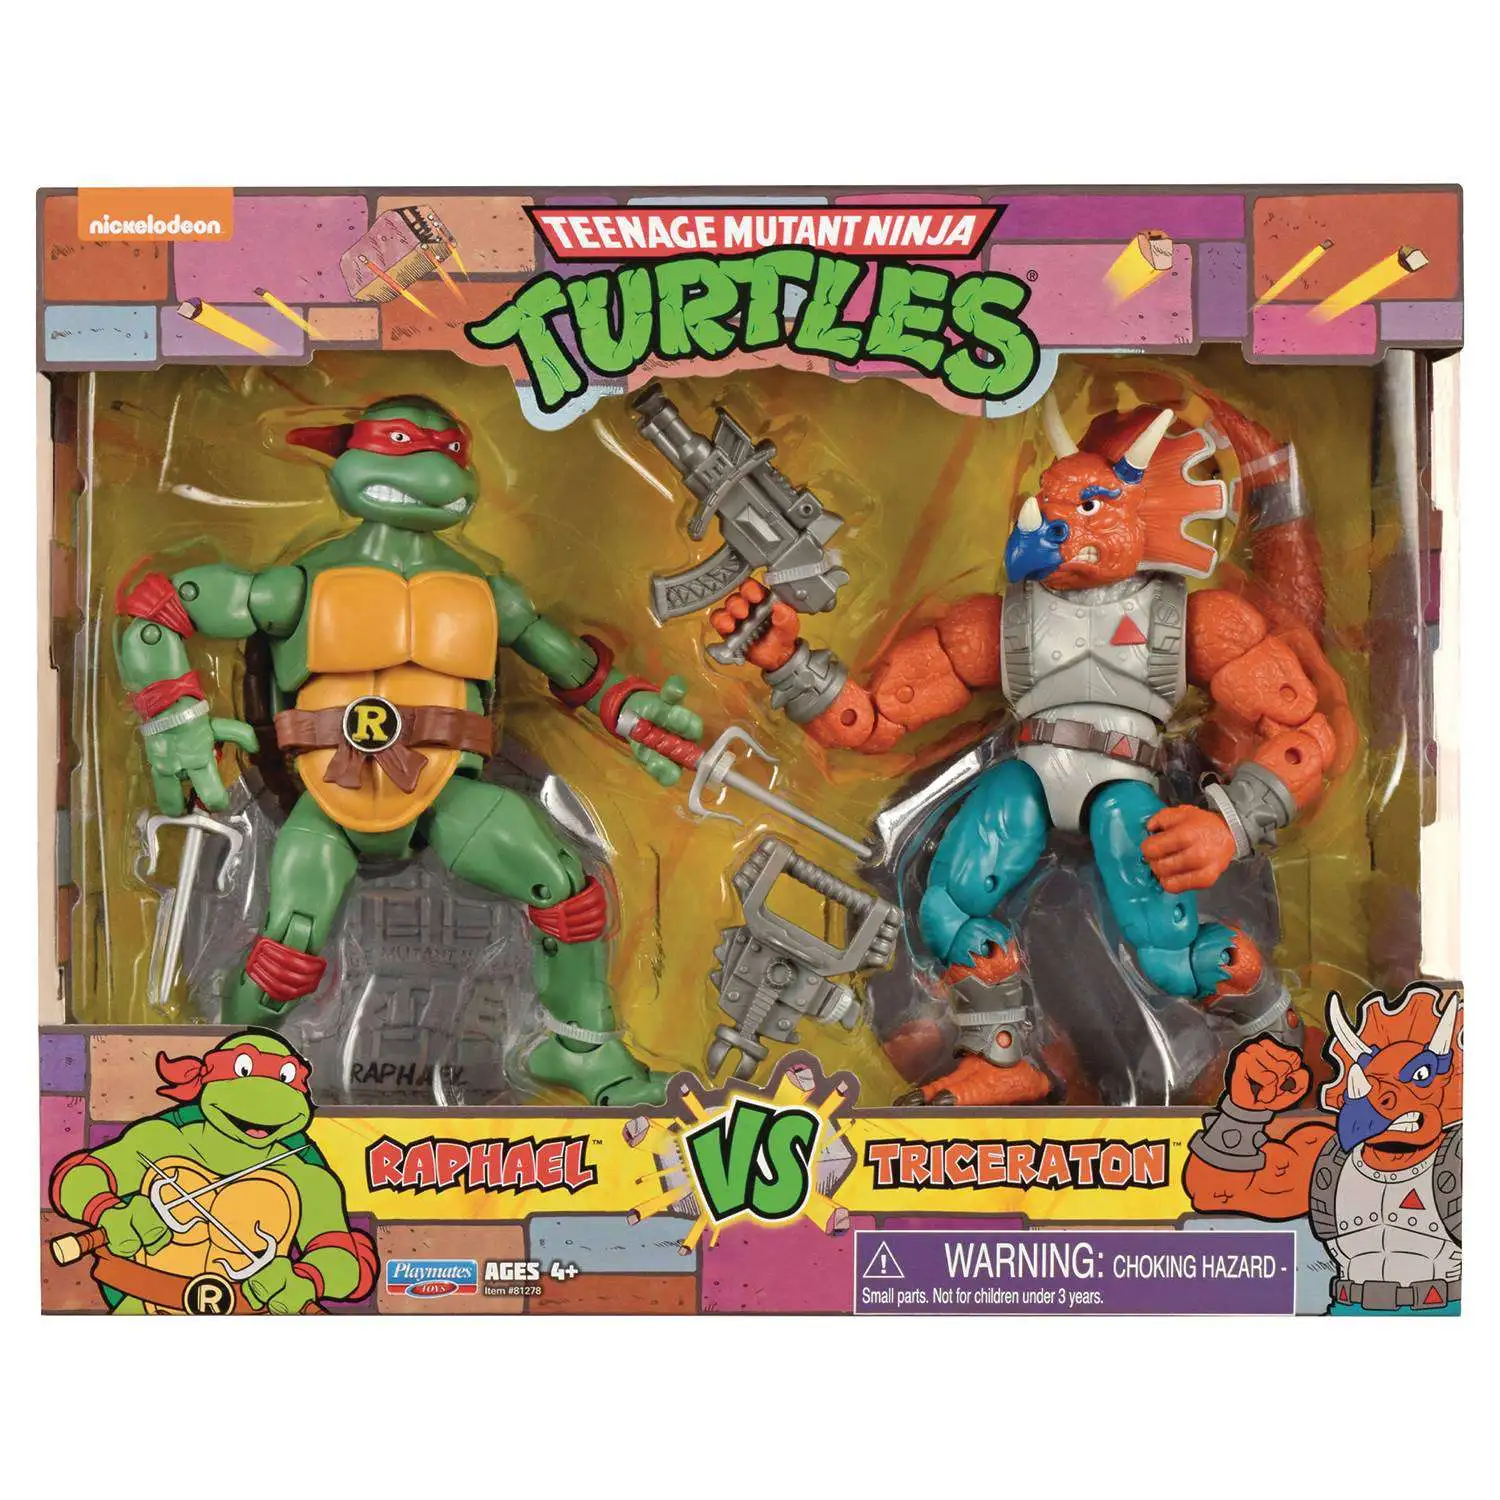 Details about   Playmates RAPHAEL Teenage Mutant Ninja Turtles 2020 Reissue Action Figure MOC 